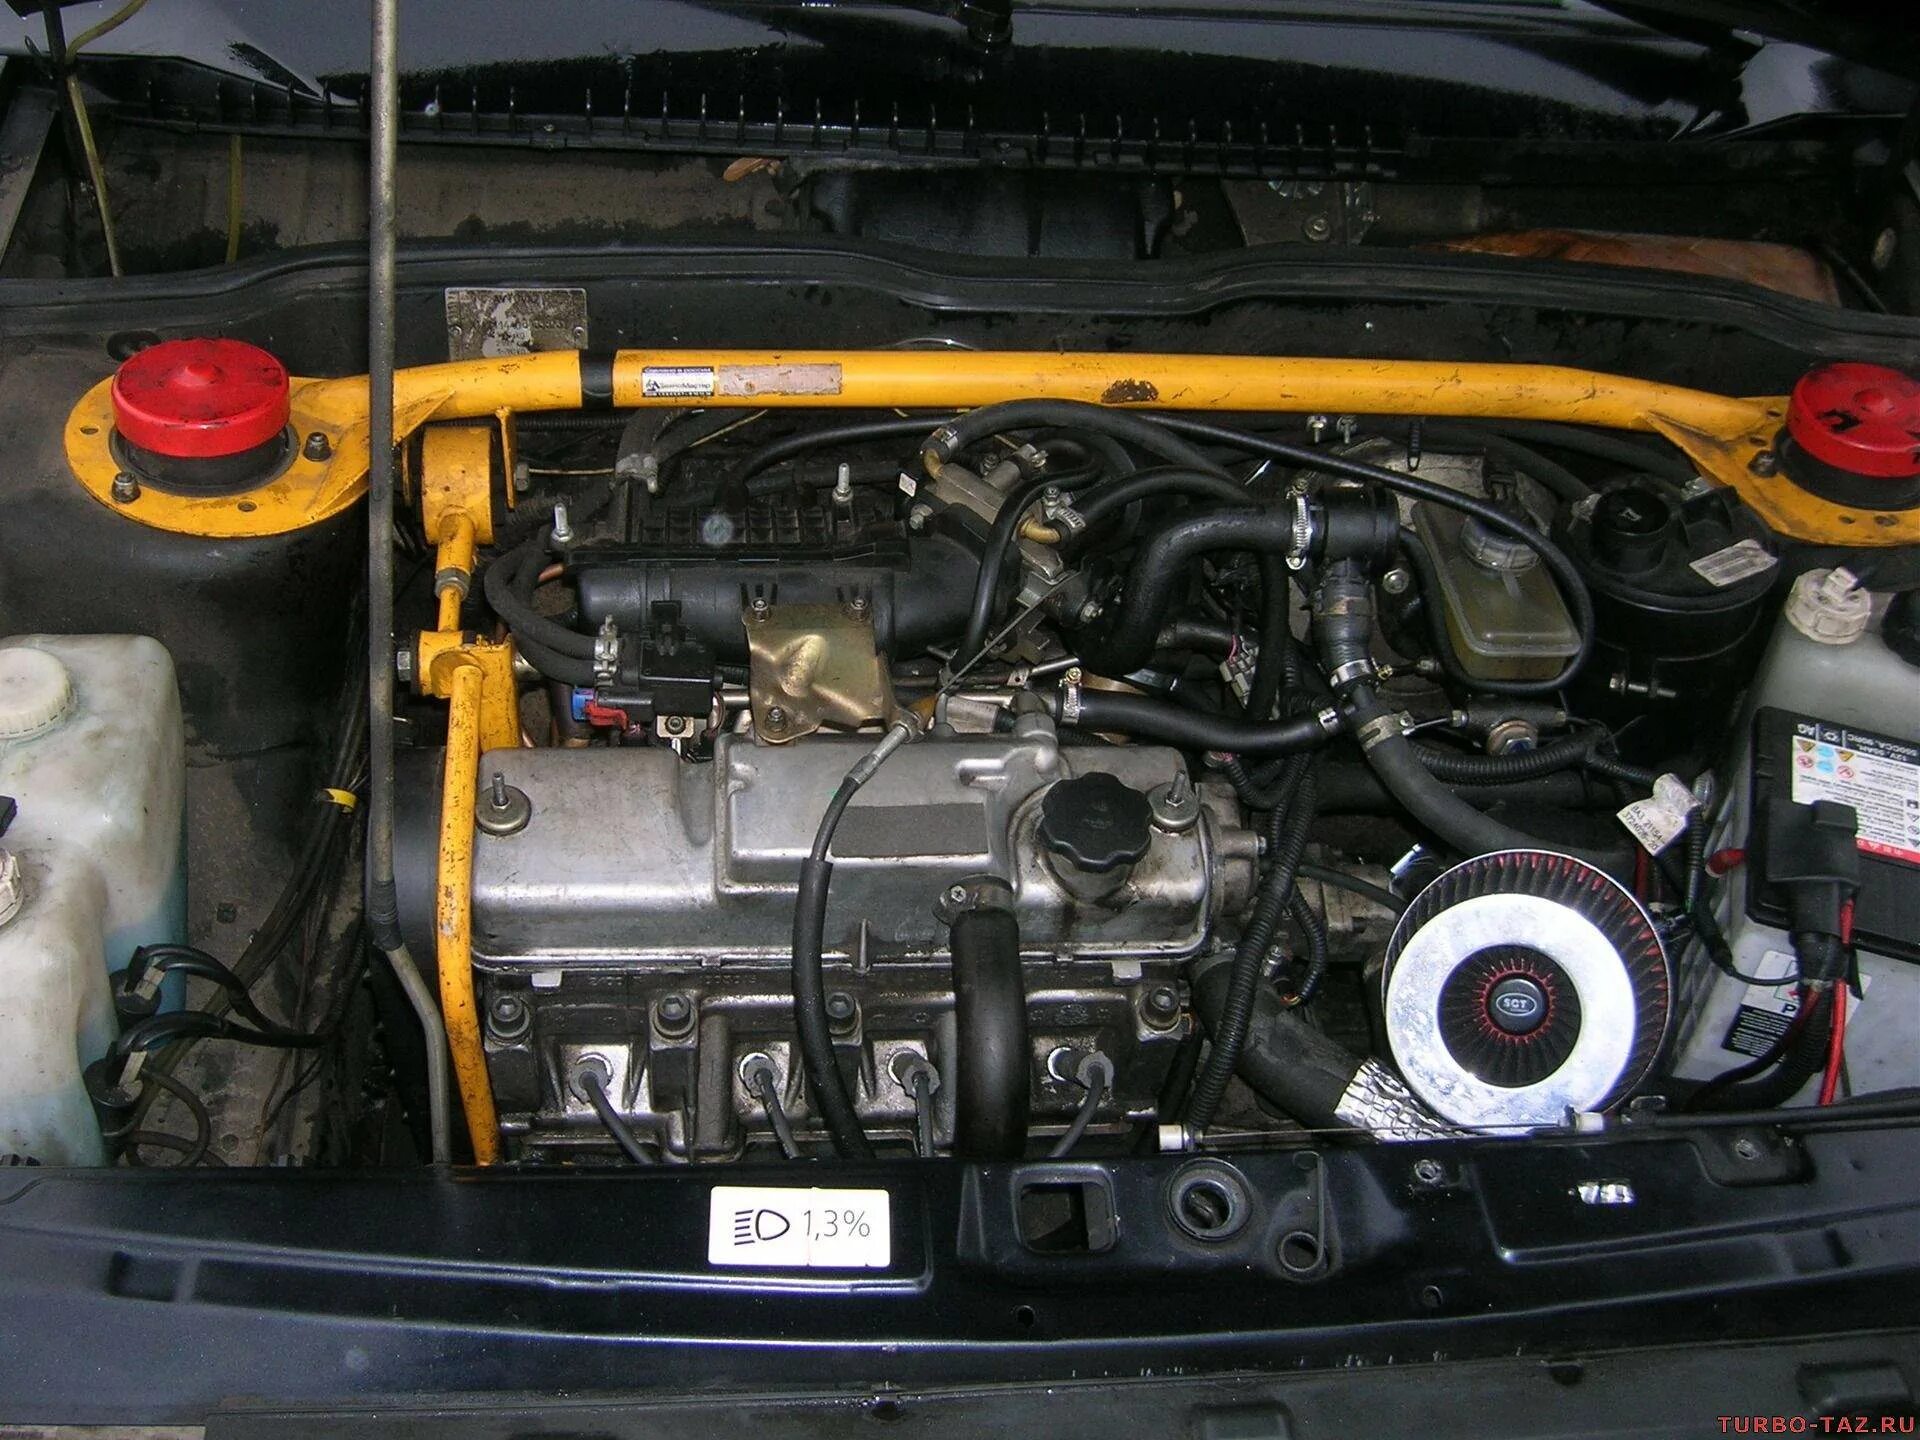 8 клап ваз 2114. Мотор ВАЗ 2114 1.5. Двигатель 1.5 ВАЗ 2114. Двигатель ВАЗ 2114 8 клапанов 1.5. ВАЗ 2114 двигатель 1.6.